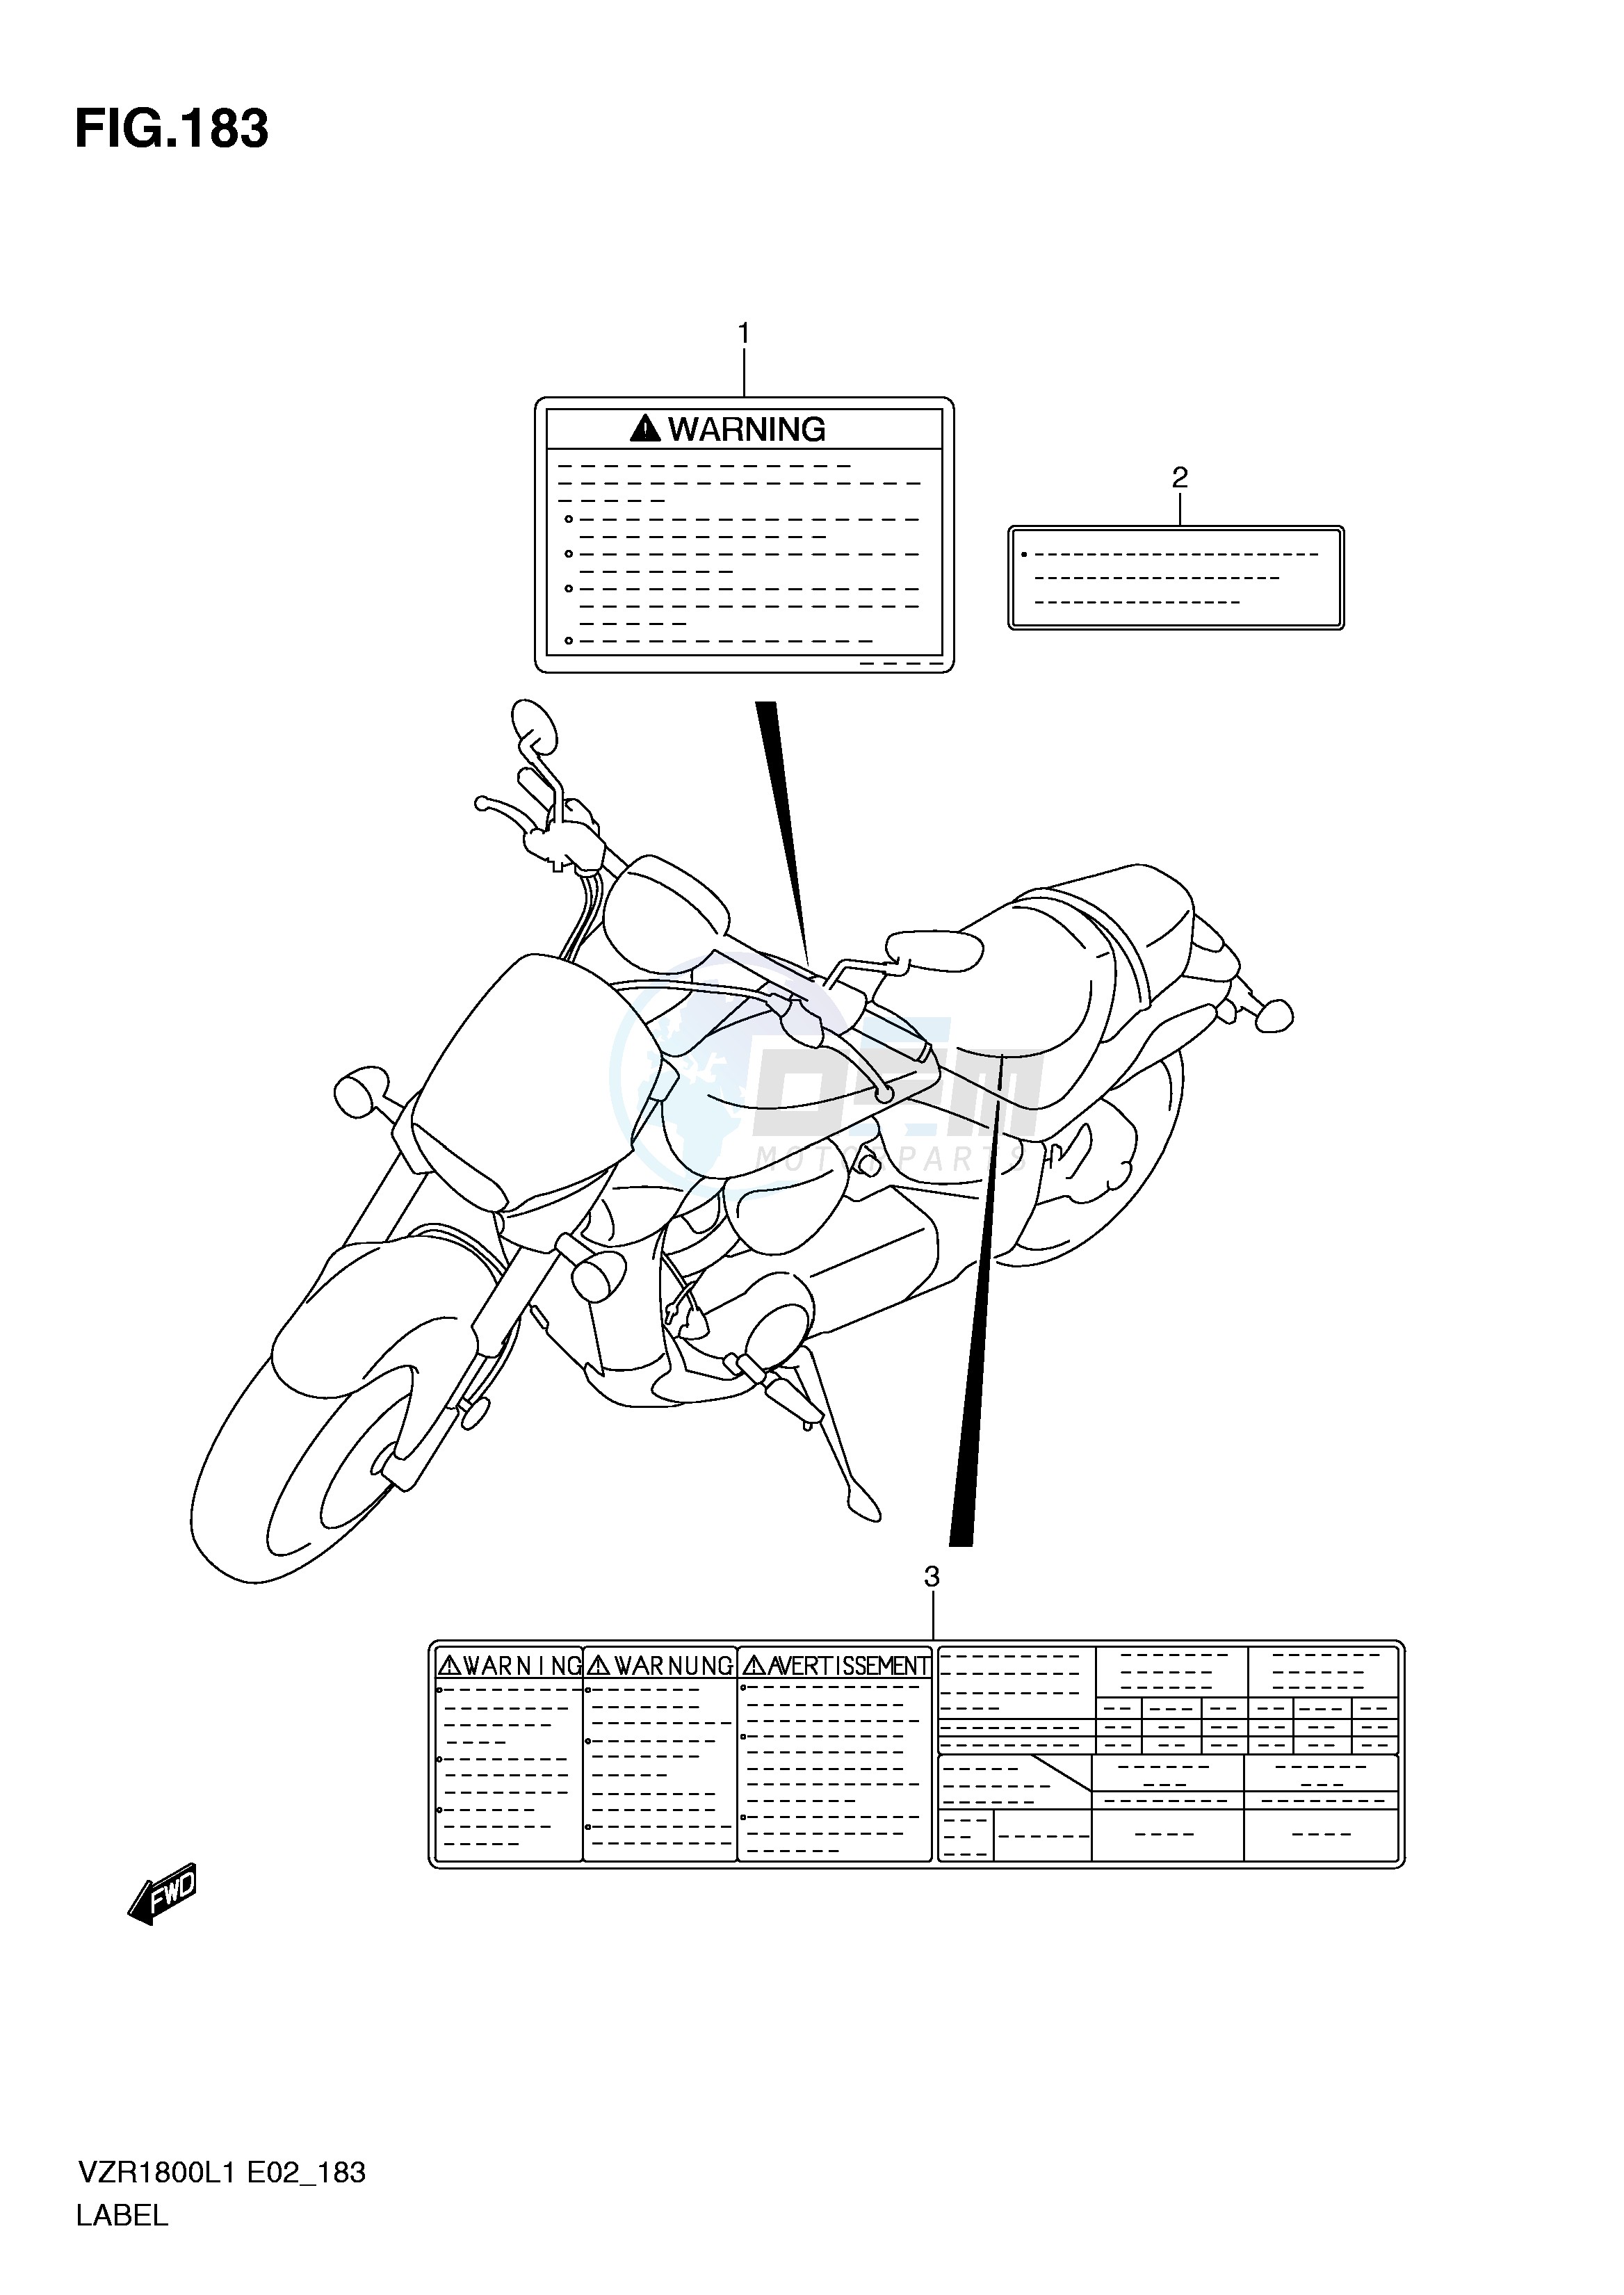 LABEL (VZR1800L1 E2) blueprint